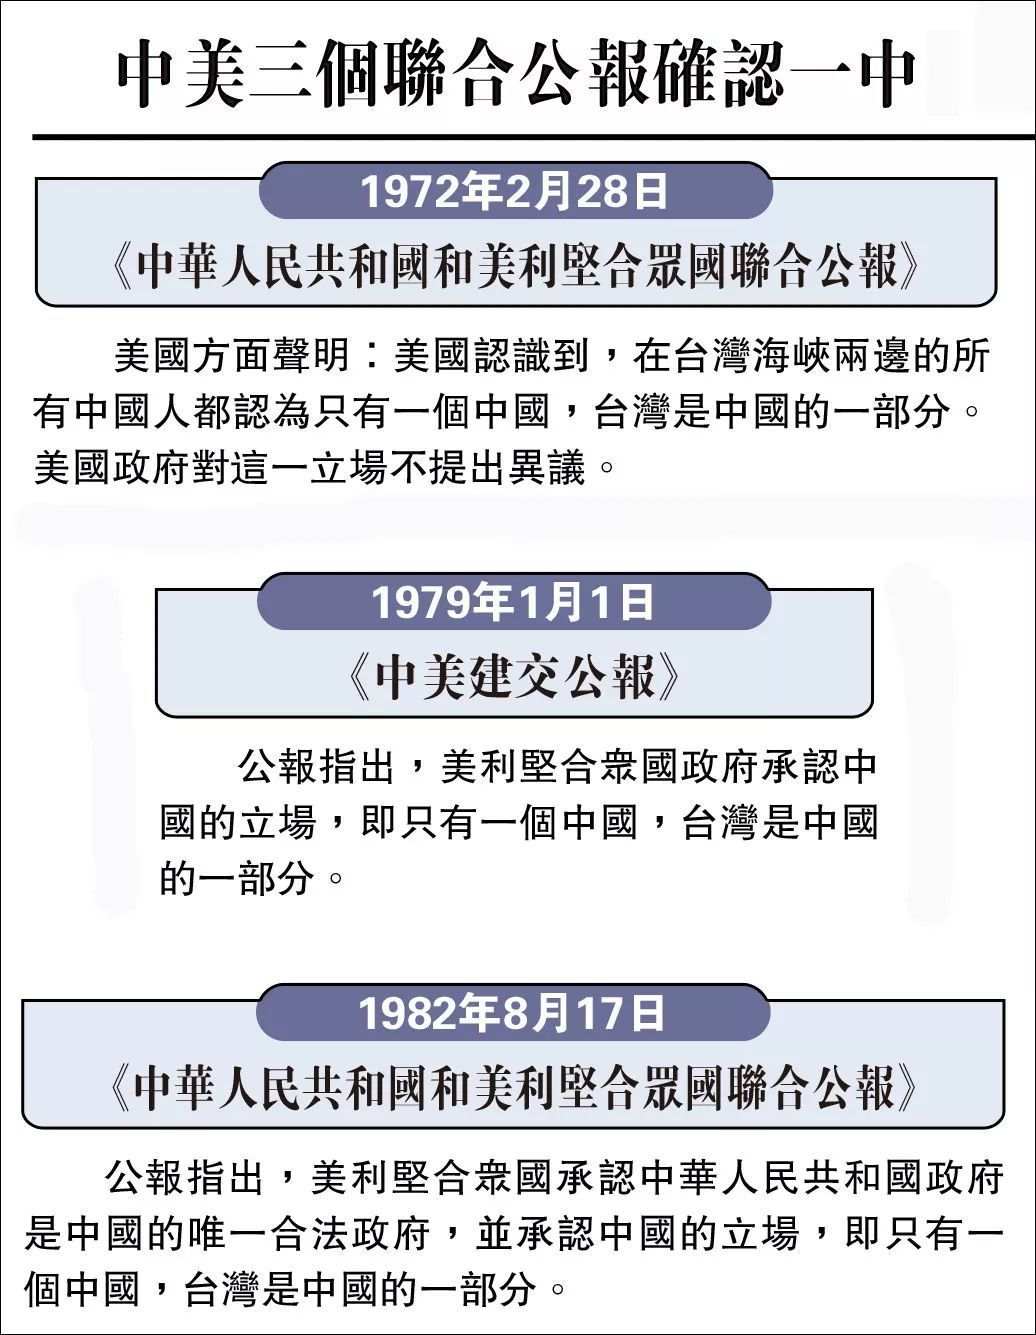 1982年8月17日 中美两国发表《中华人民共和国和美利坚合众国联合公报